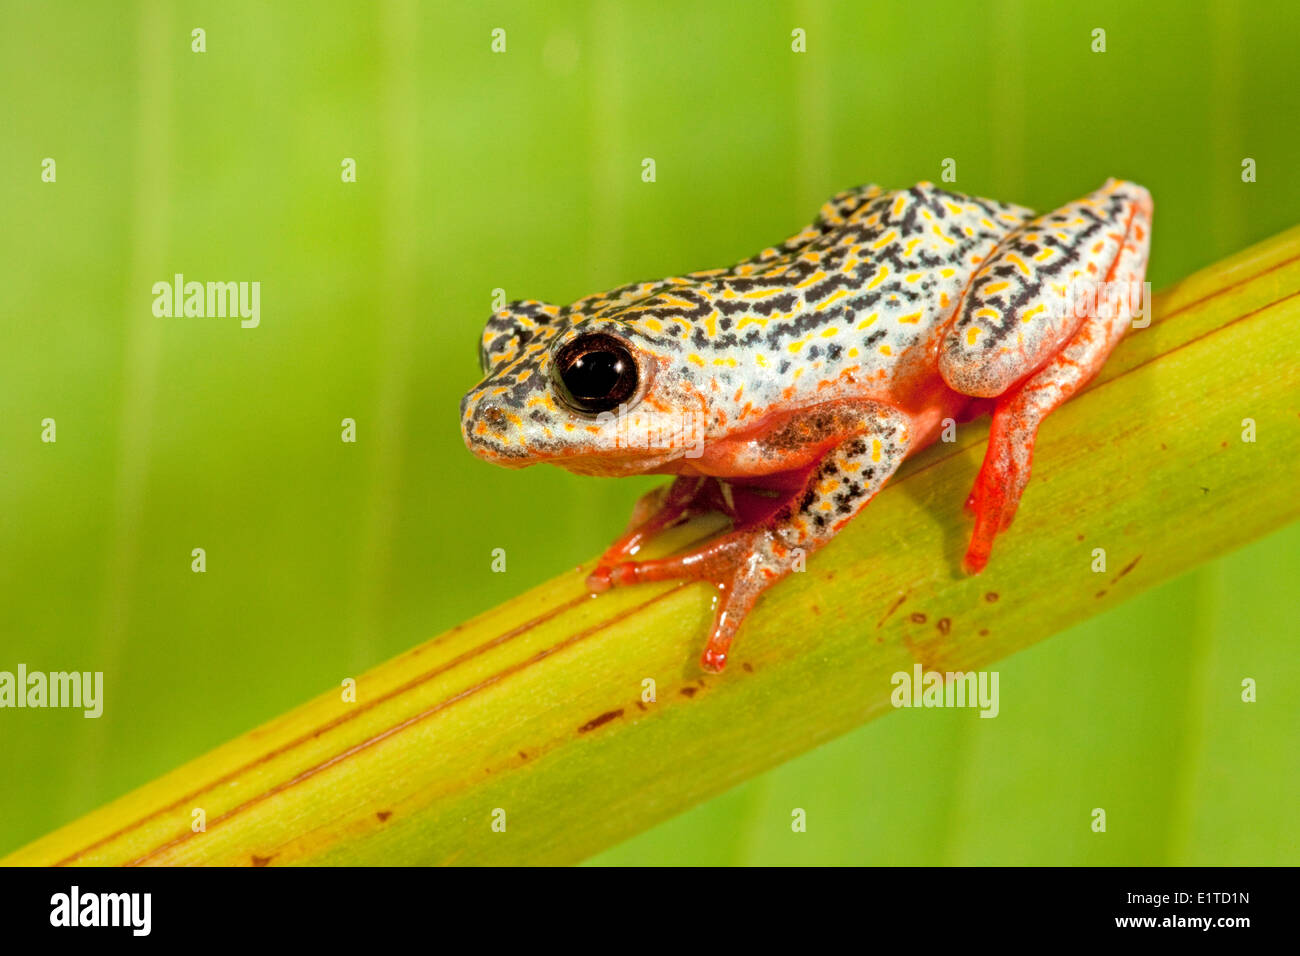 Photo d'une grenouille reed peint Banque D'Images